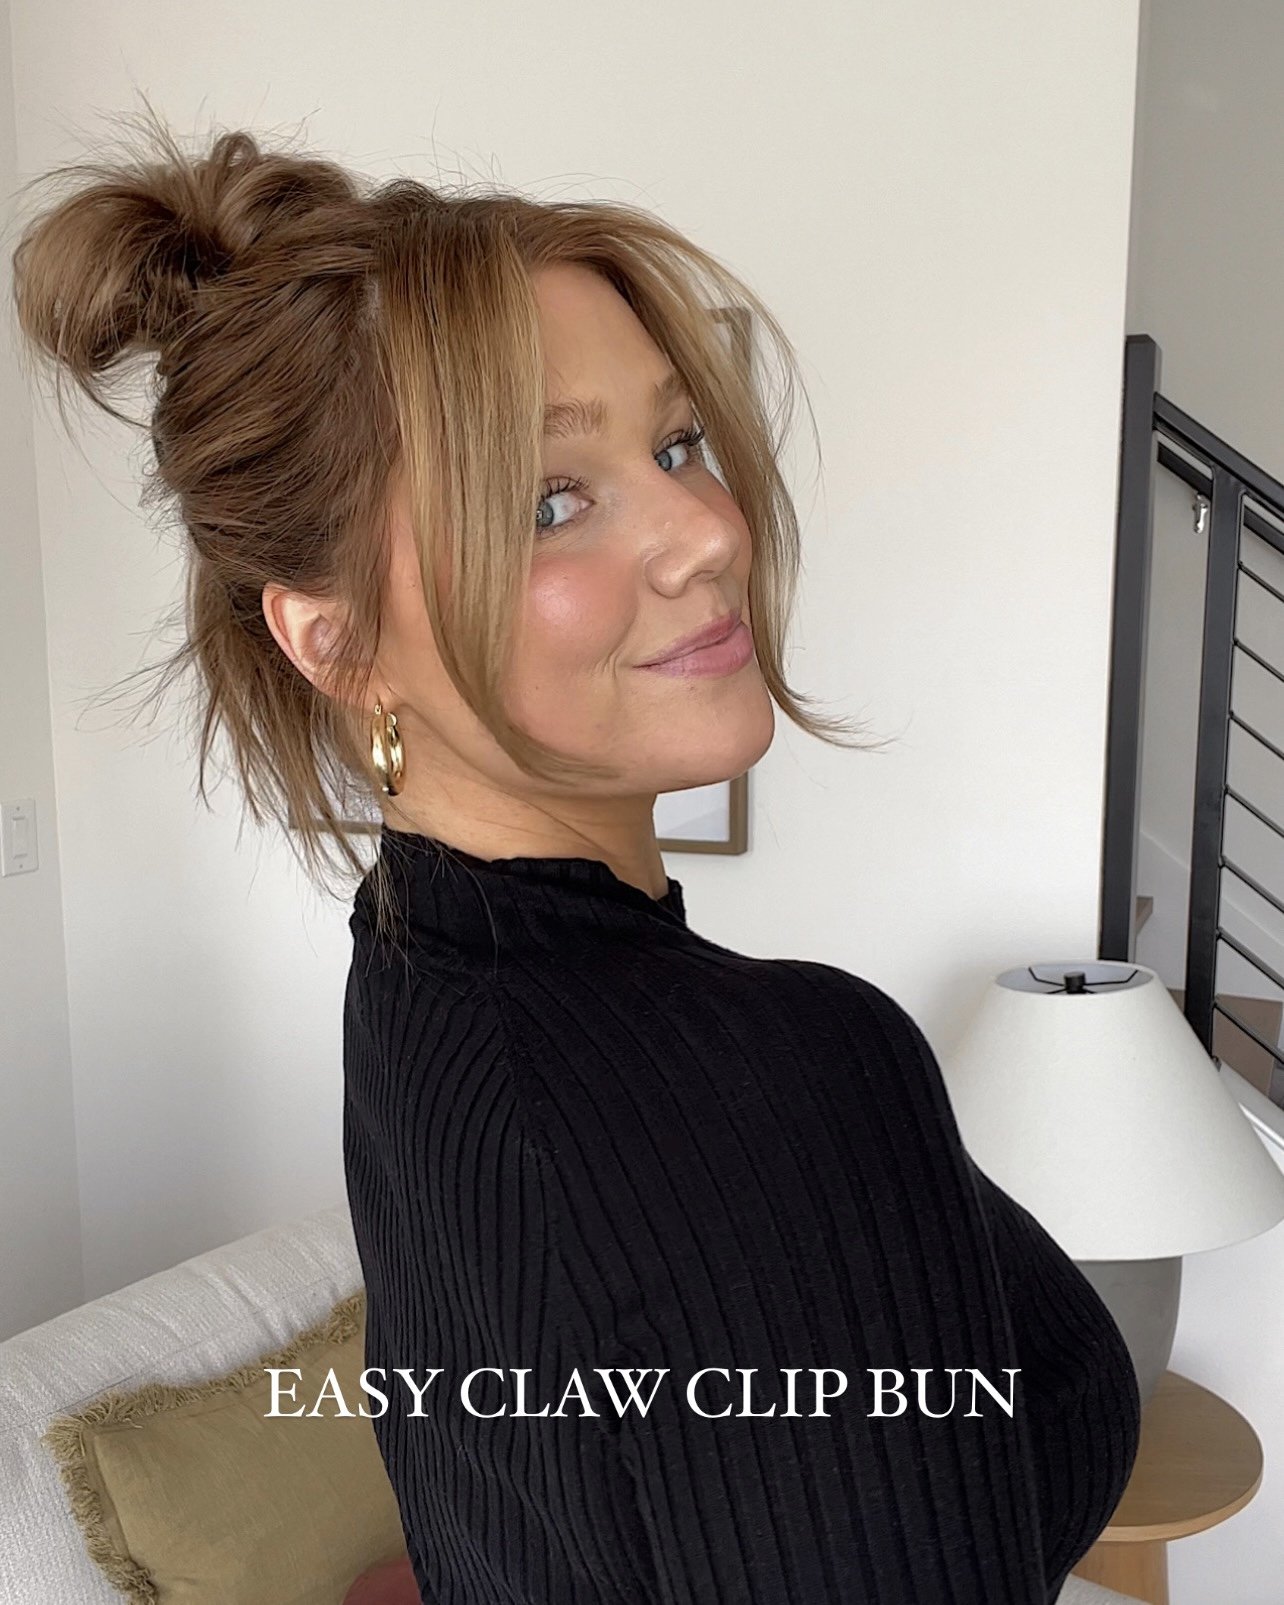 Easy Claw Clip Bun Tutorial - Easy Summer Hair - Bronde Hair - Bre Sheppard.jpg